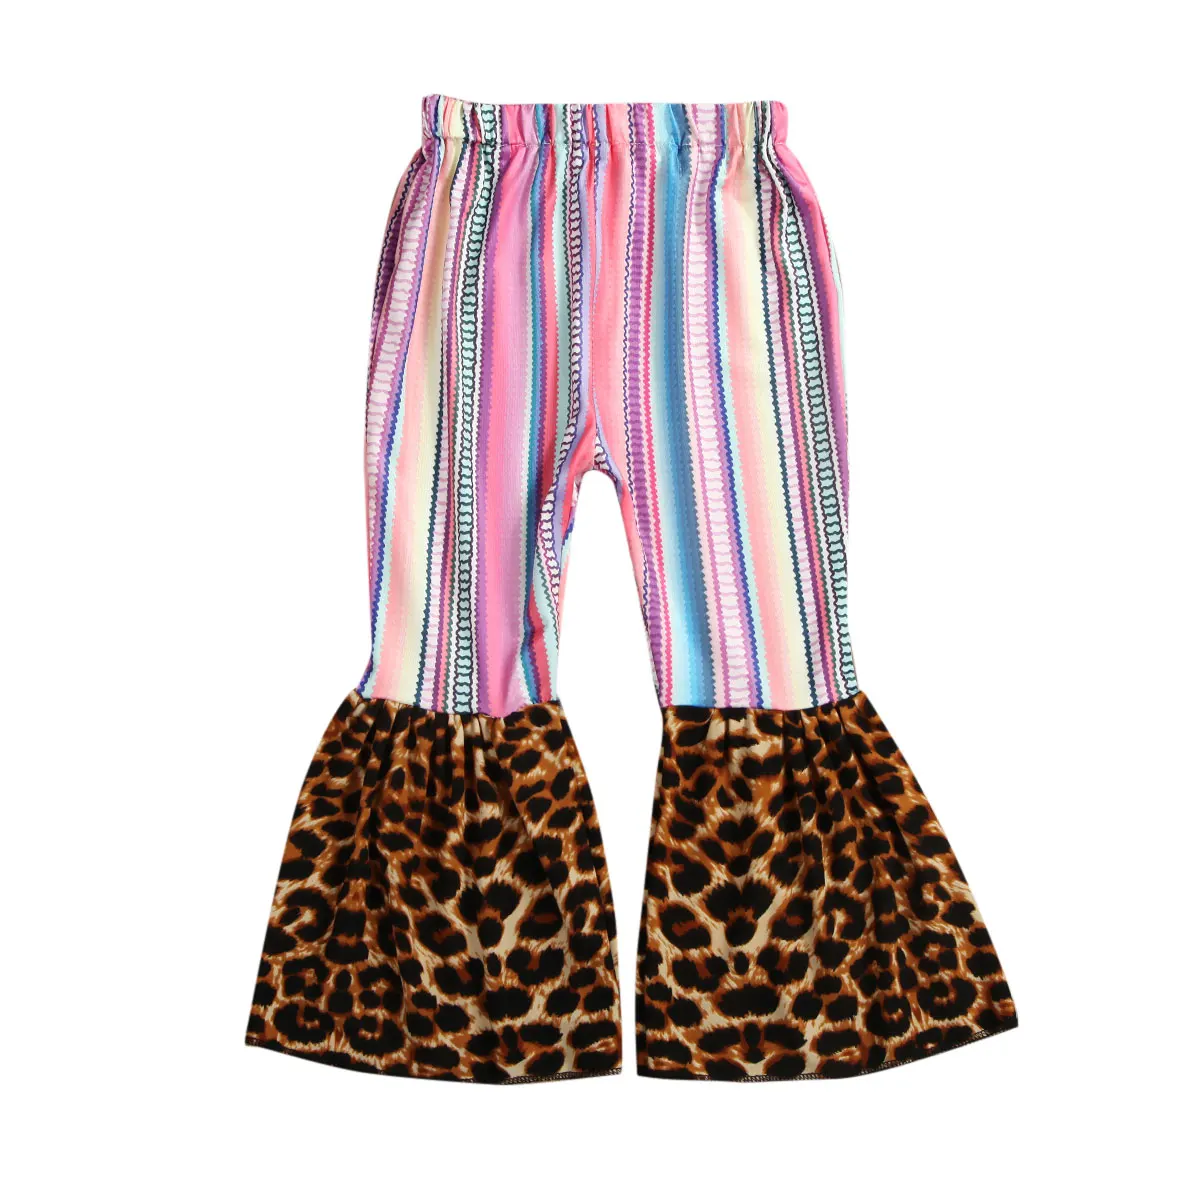 9 цветов, штаны для маленьких девочек, одежда леопардовые и клетчатые расклешенные леггинсы, штаны, брюки, комплект От 1 до 6 лет - Цвет: leopard and striped